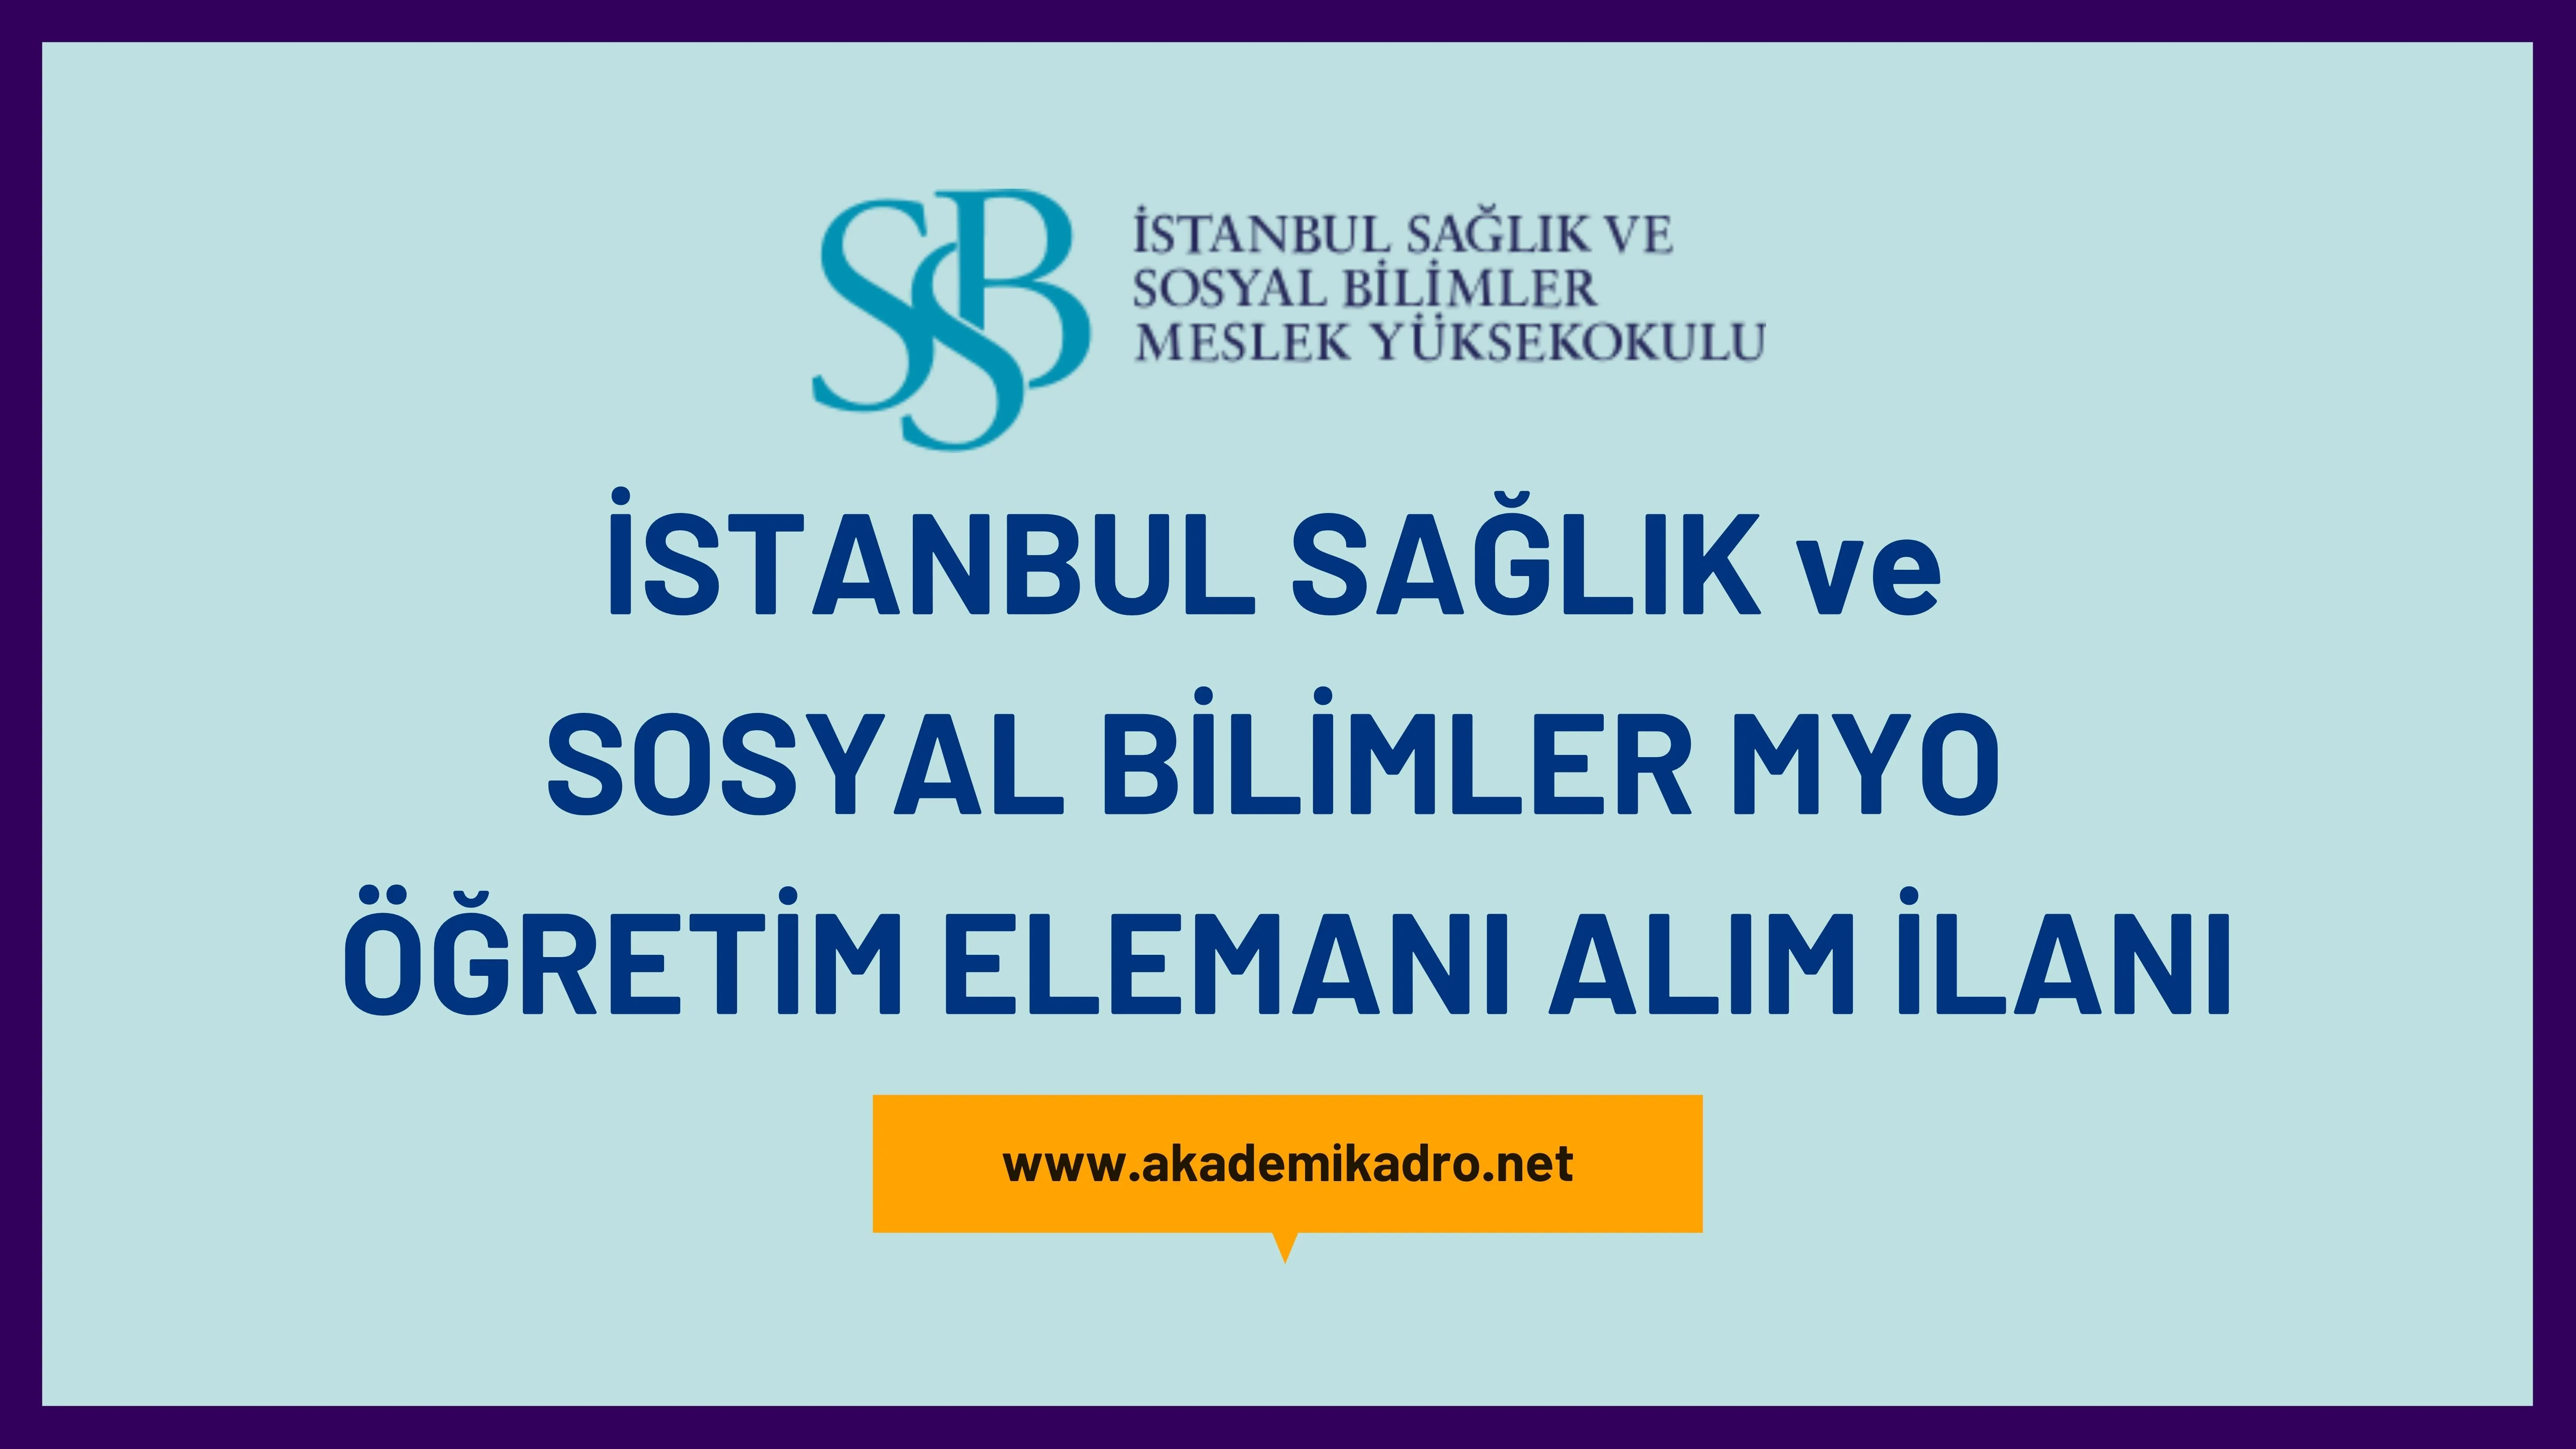 İstanbul Sağlık ve Sosyal Bilimler Meslek Yüksekokulu 16 Öğretim görevlisi alacaktır.